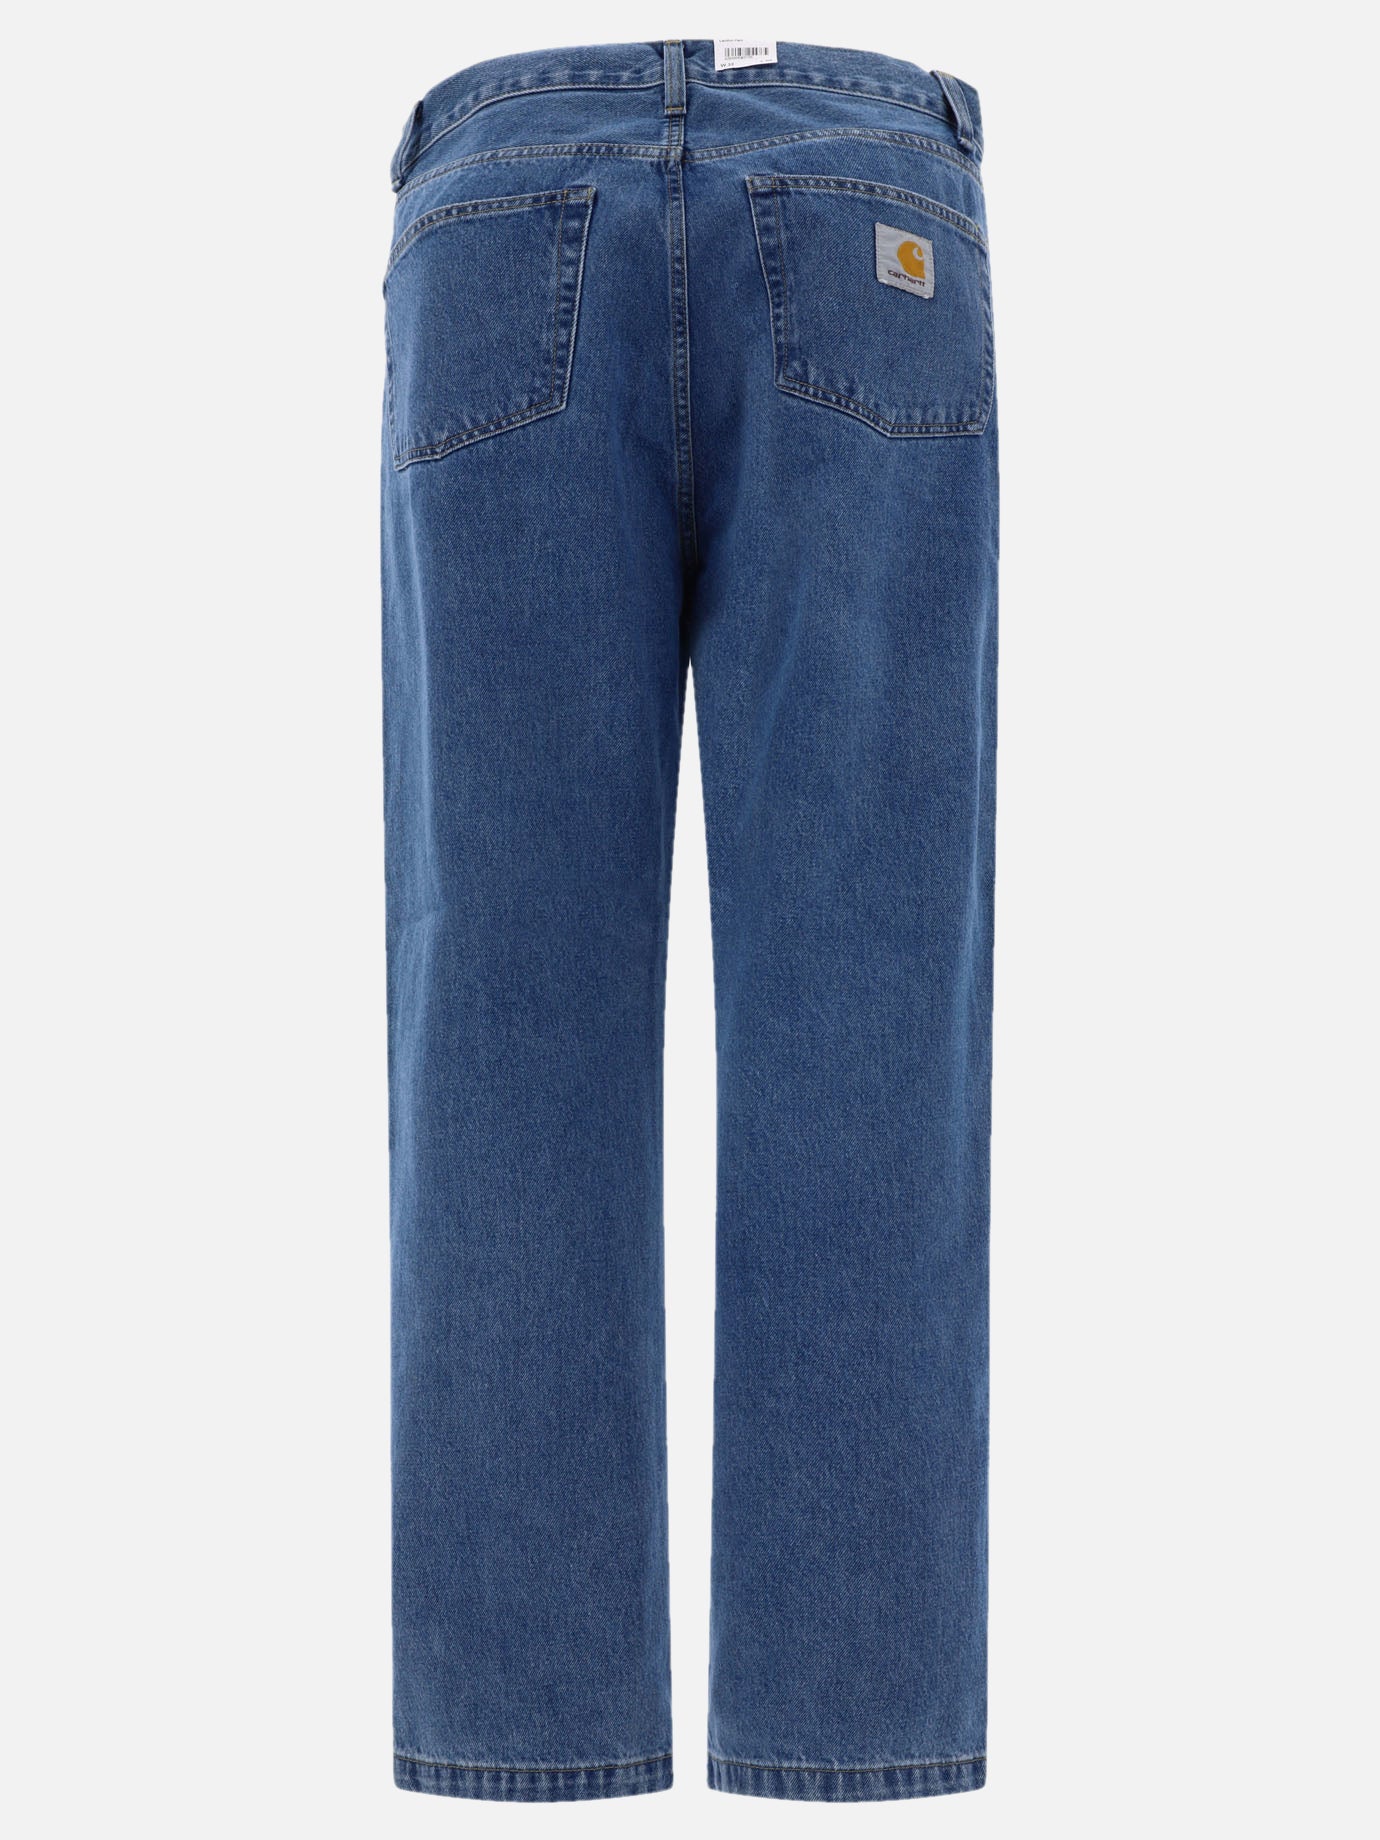 "Landon" jeans